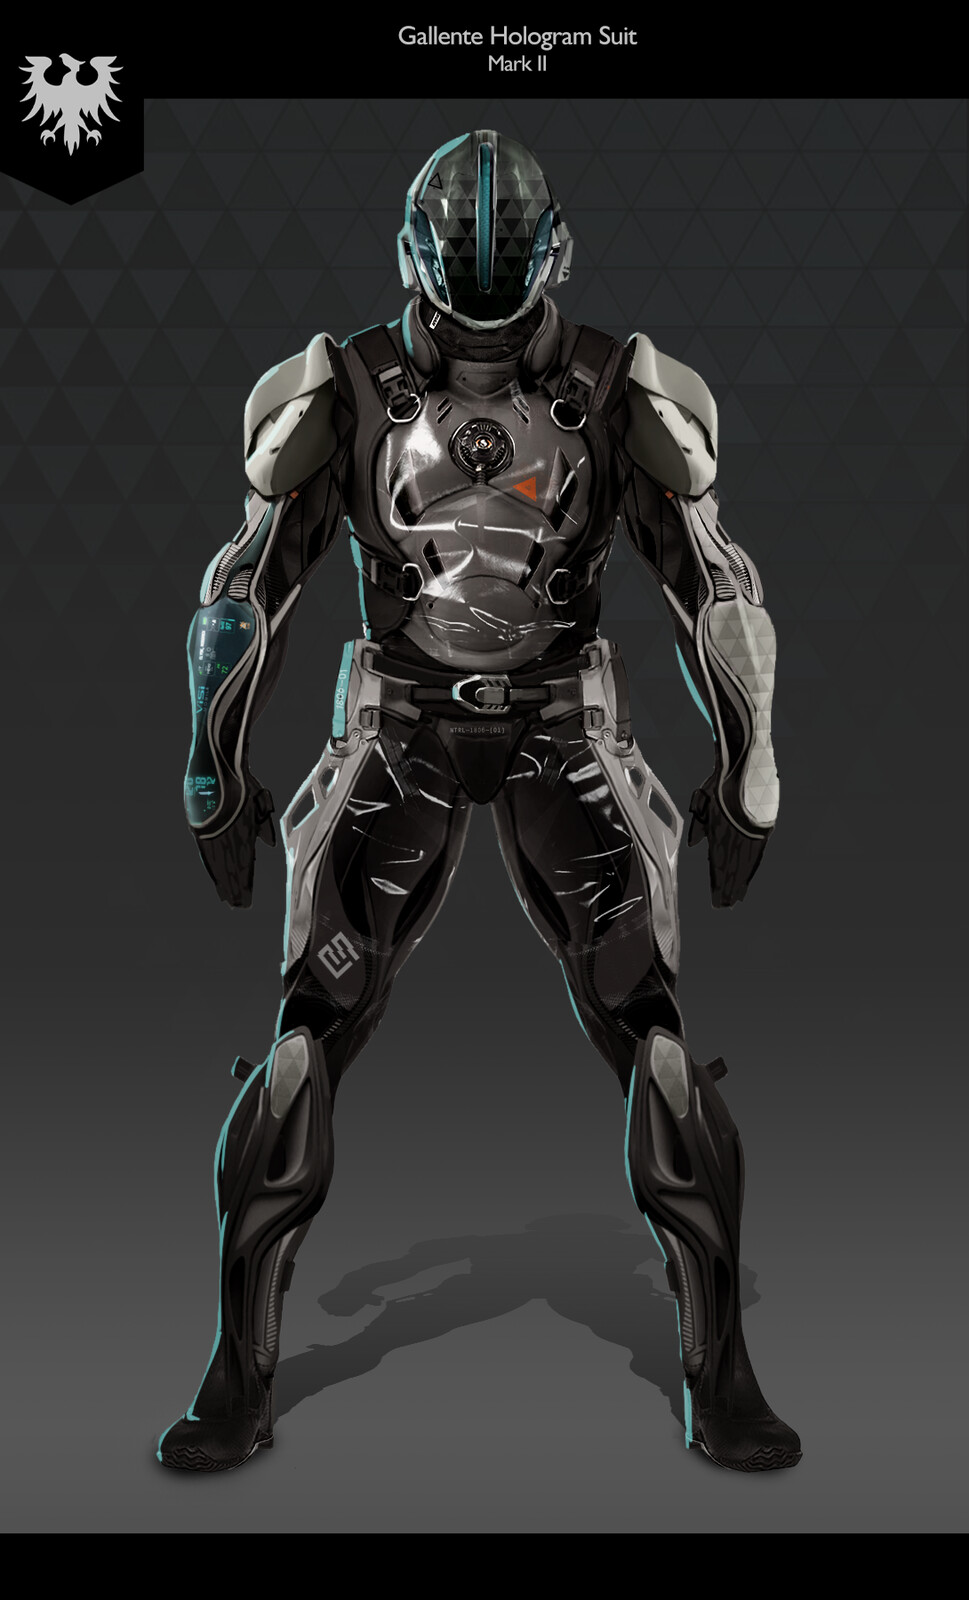 Space Suit Concept